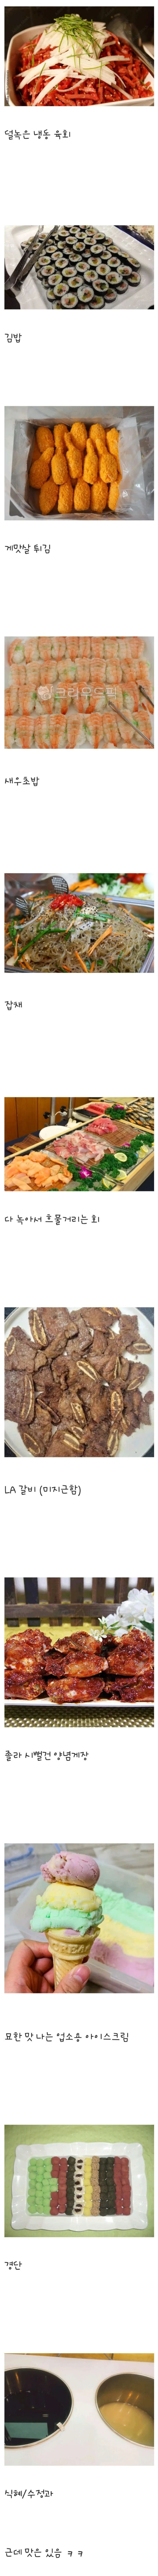 싸구려뷔페 음식 라인업 특(0)